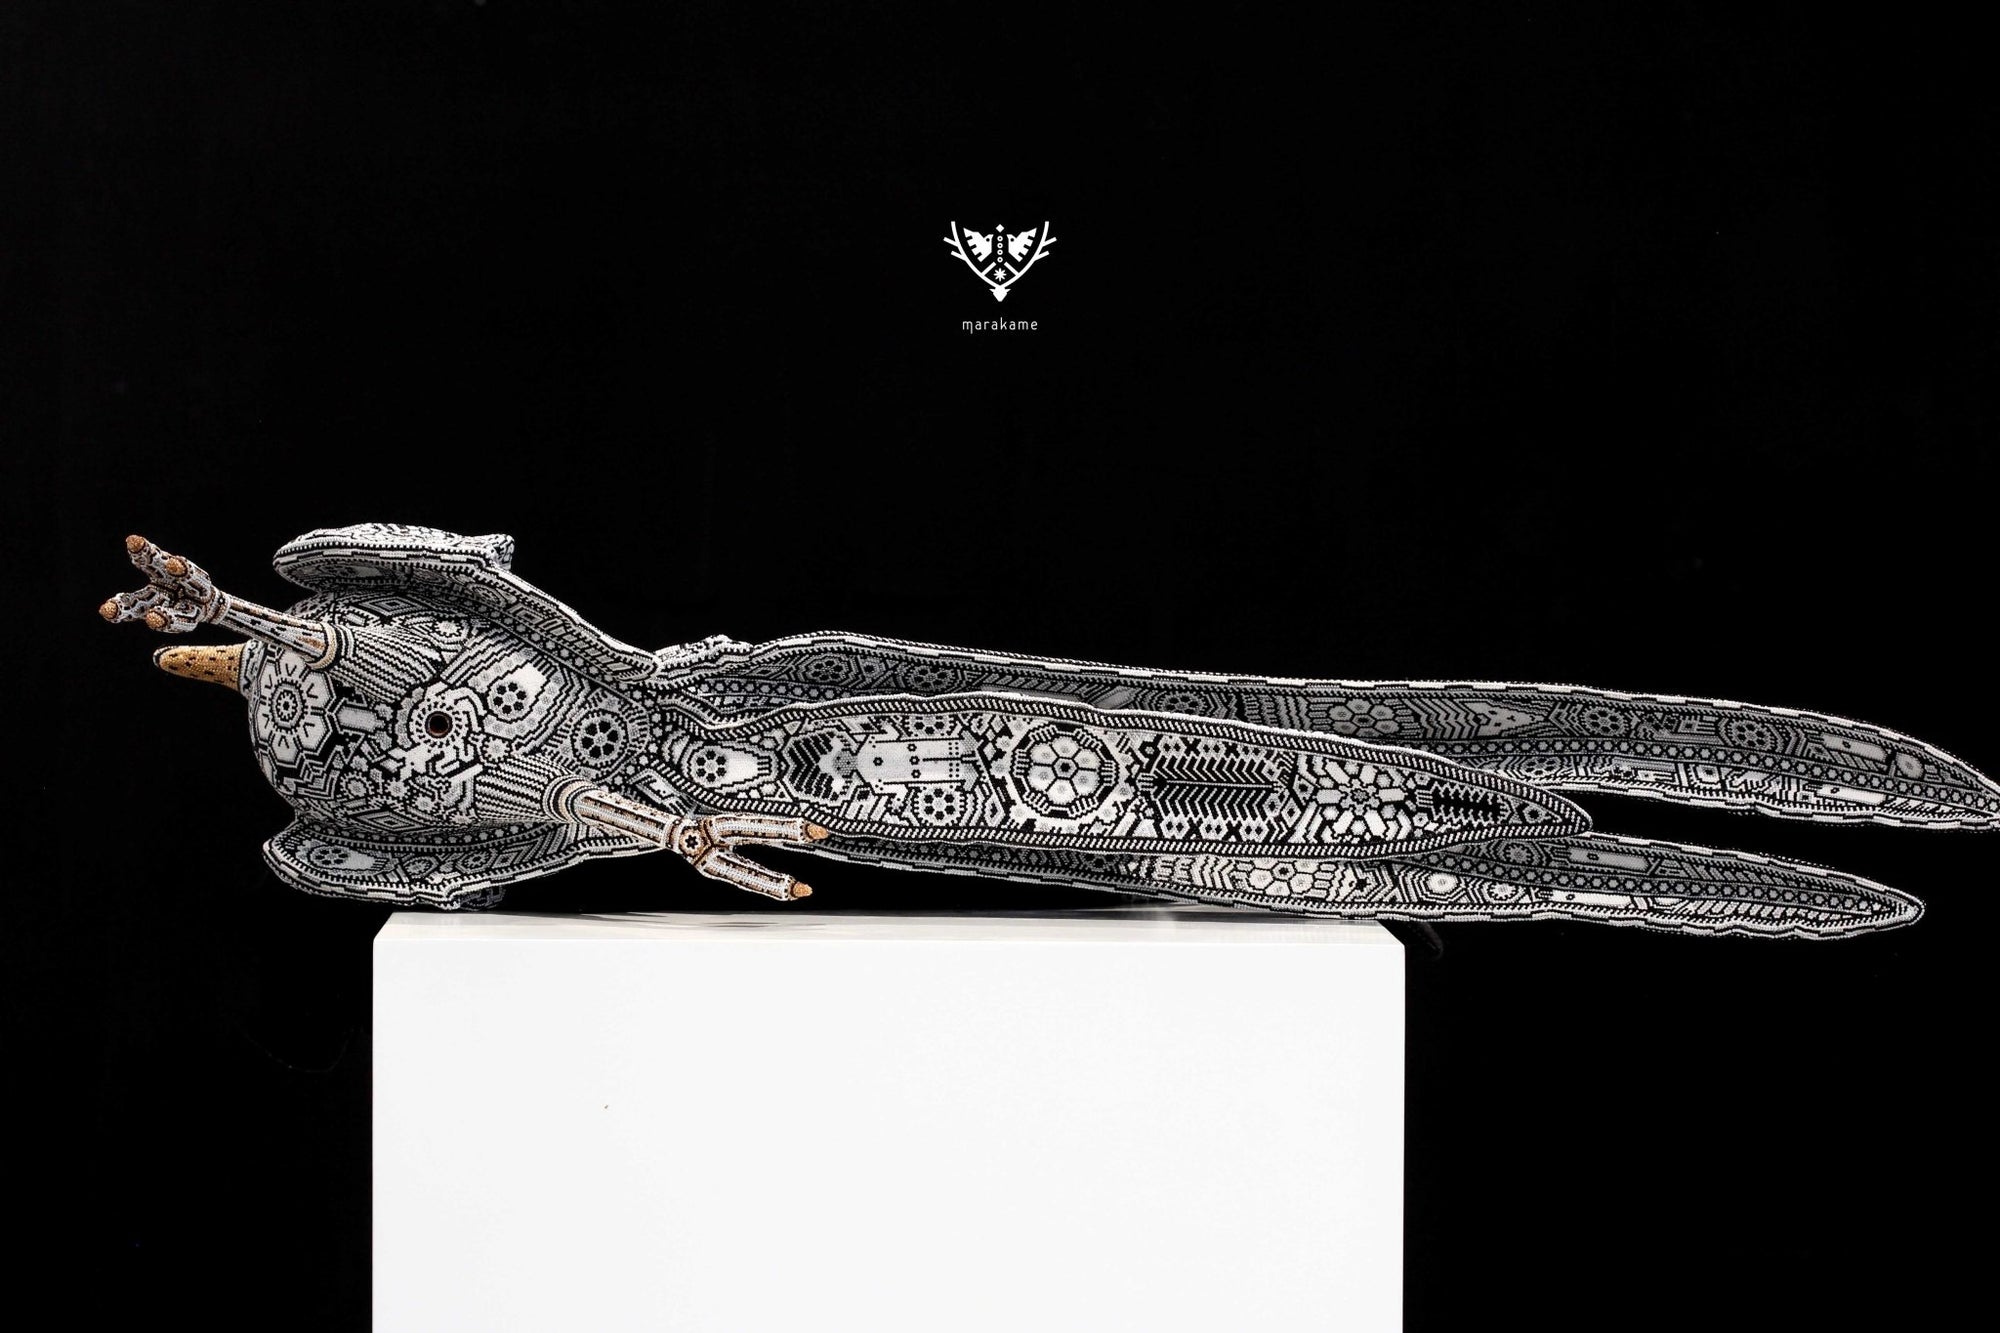 ウイチョル族アート彫刻 - ロードランナー I - ウイチョル族アート - マラカメ